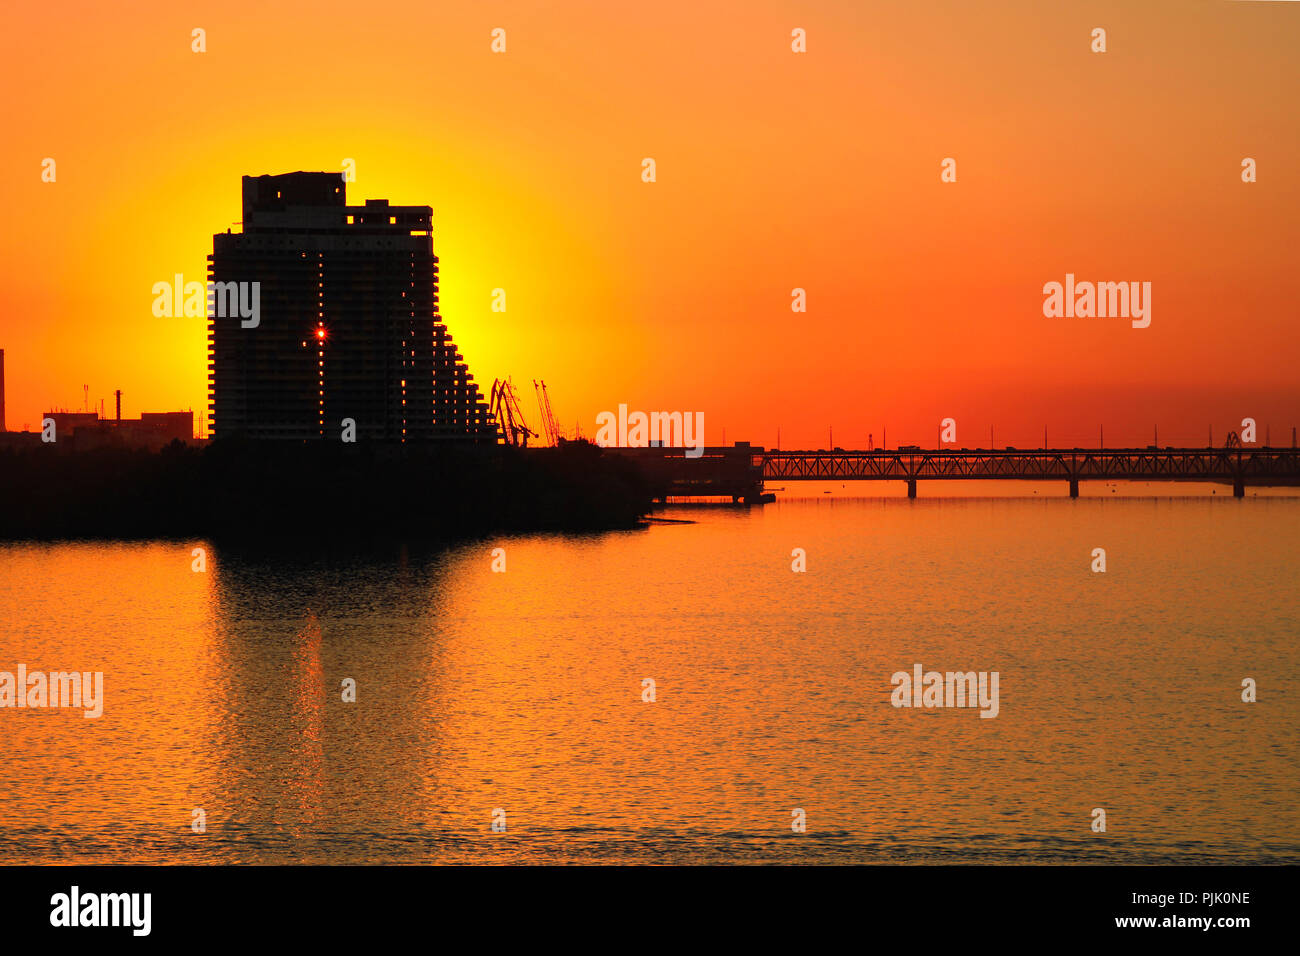 Silhouette d'un gratte-ciel et le pont sur l'orange fond coucher de soleil, sur le Dniepr dans le Dniepr Dniepropetrovsk (ville, Dnepr), Ukraine Banque D'Images